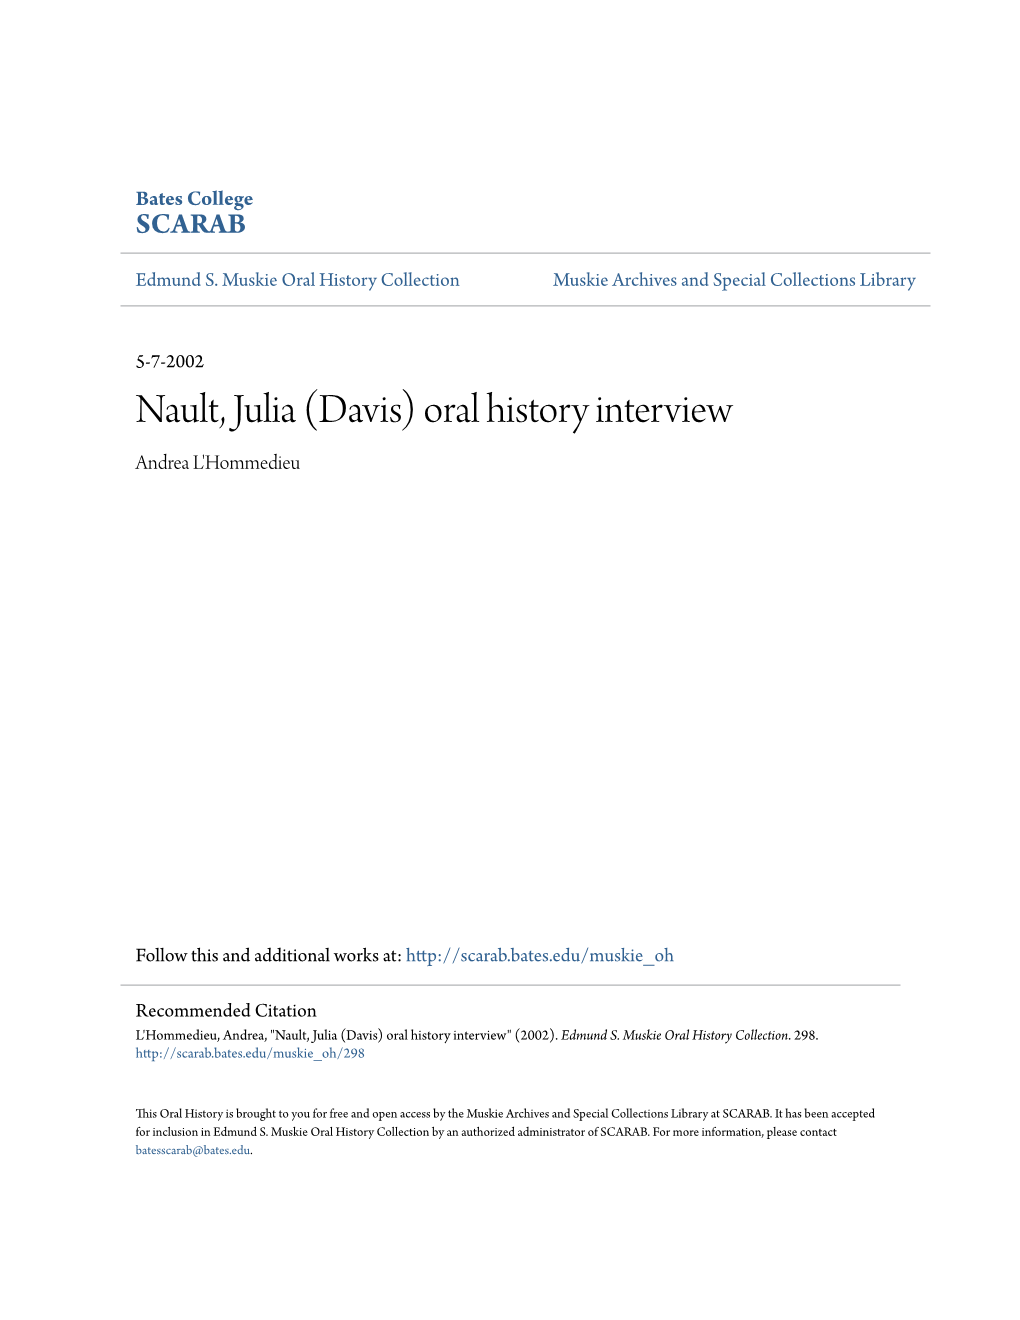 Nault, Julia (Davis) Oral History Interview Andrea L'hommedieu